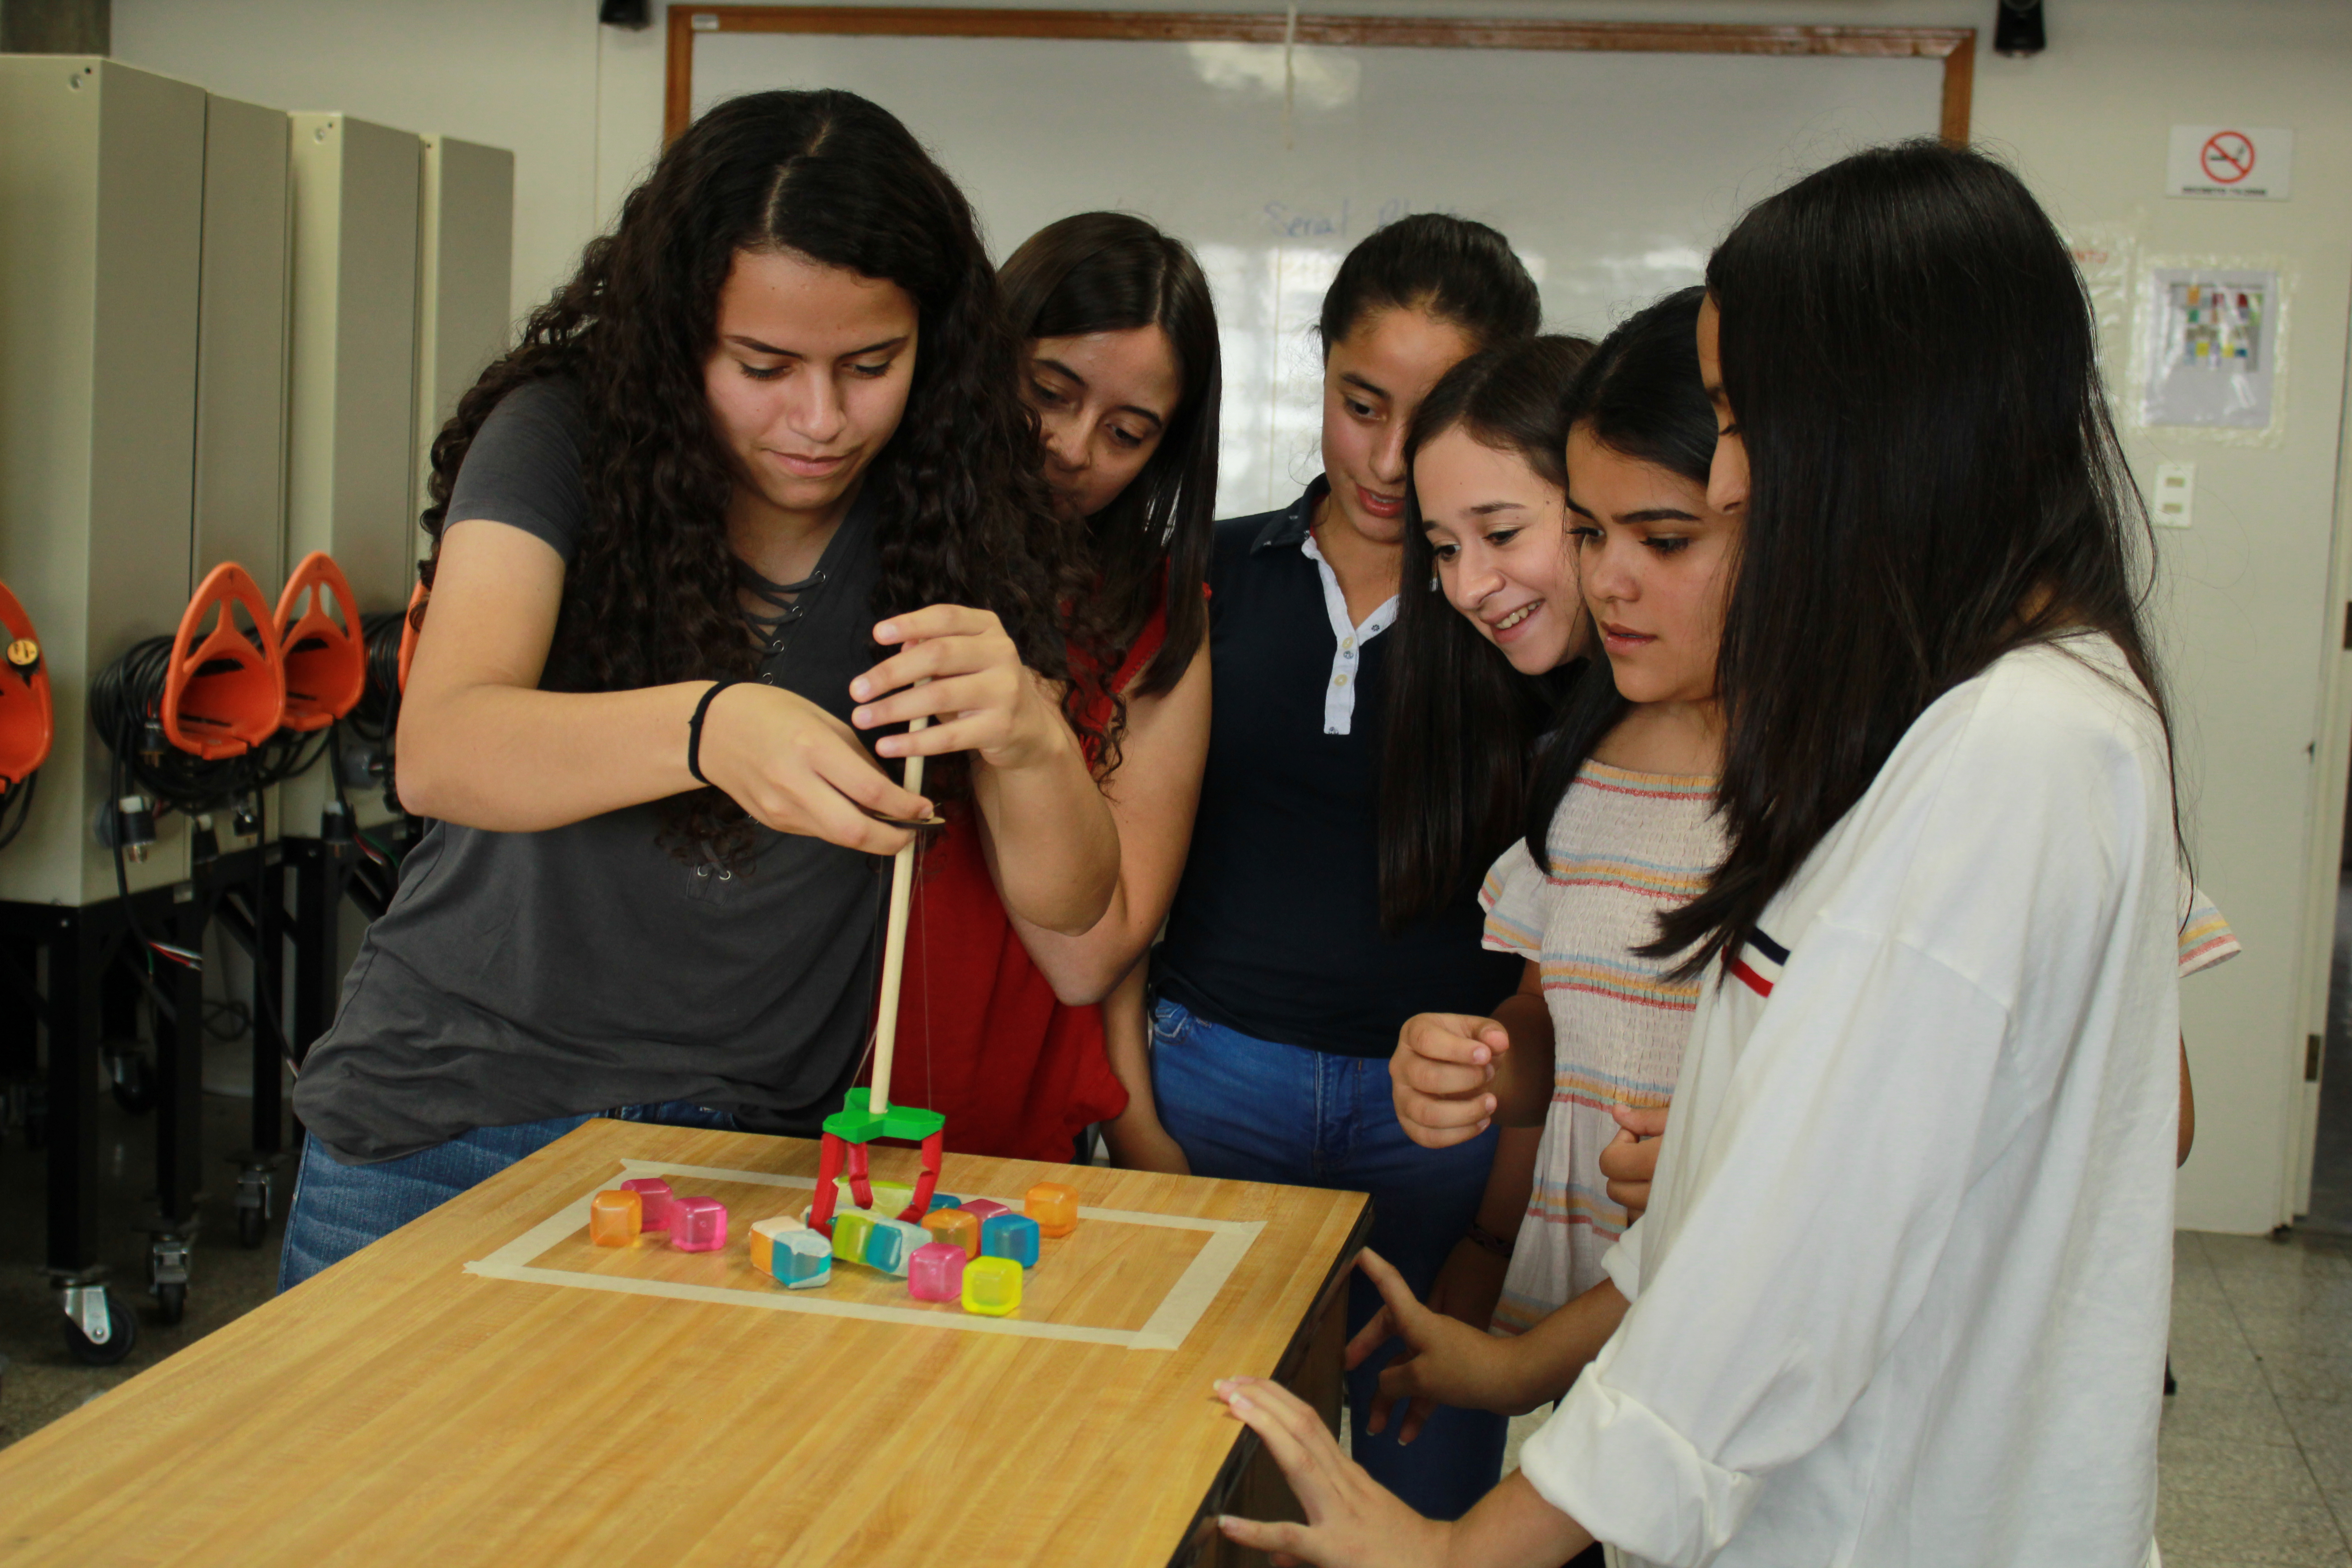 Junto a ingenieras expertas, las jovencitas descubren la labor de las mujeres en la ingeniería y elaboran proyectos. Foto Prensa Libre: Cortesía UVG